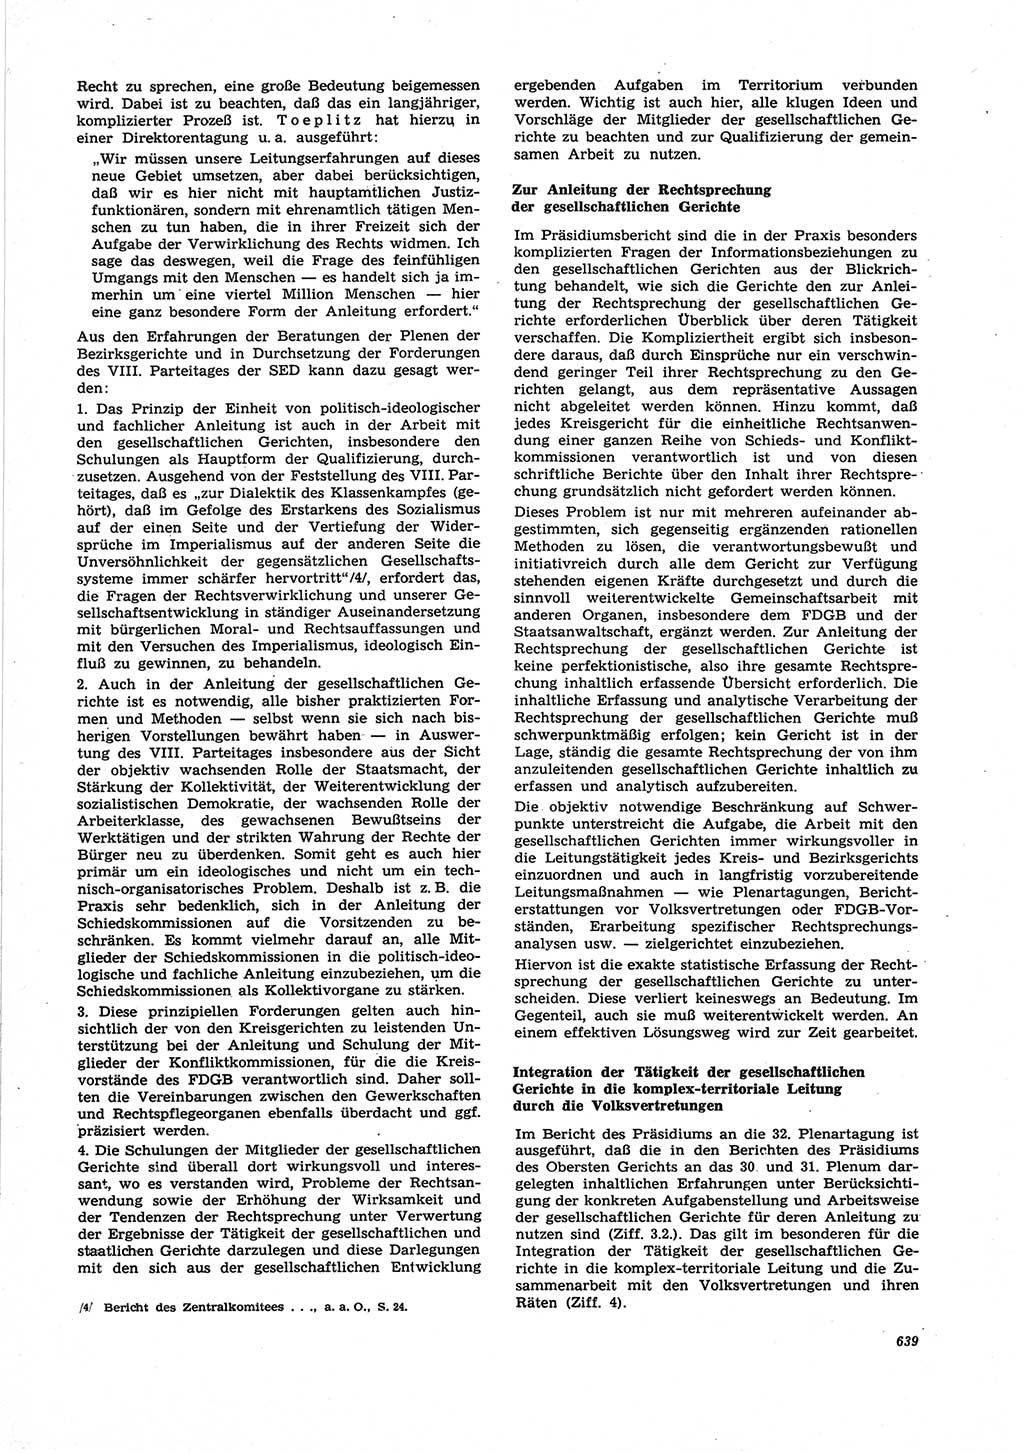 Neue Justiz (NJ), Zeitschrift für Recht und Rechtswissenschaft [Deutsche Demokratische Republik (DDR)], 25. Jahrgang 1971, Seite 639 (NJ DDR 1971, S. 639)